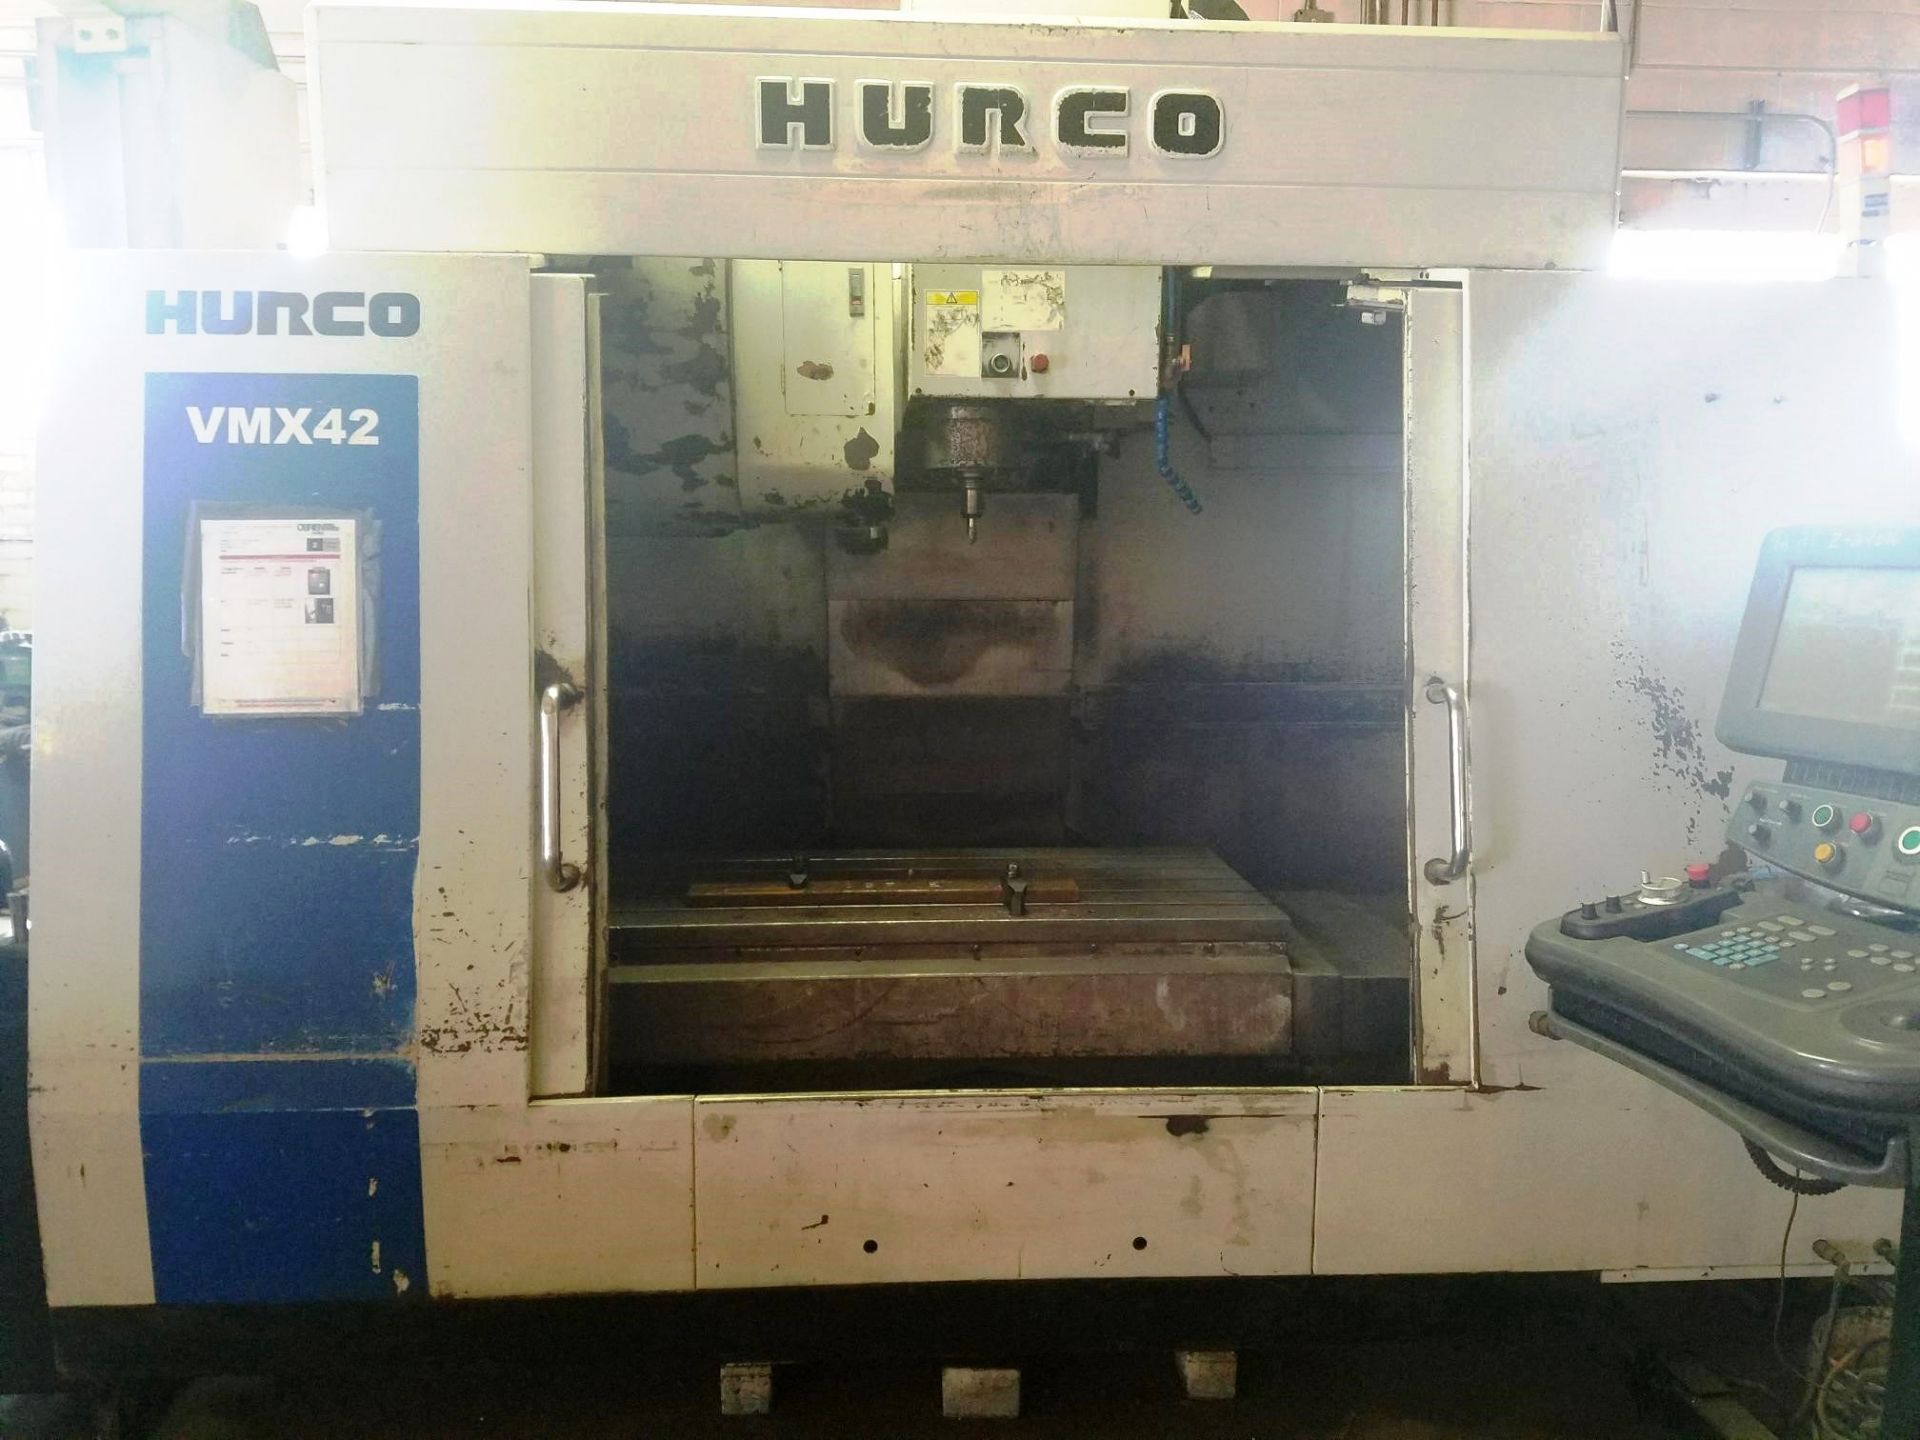 Hurco VMX 42 CNC 3-Axis Vertical Machining Center, S/N V442-06023116EHA, New 2006